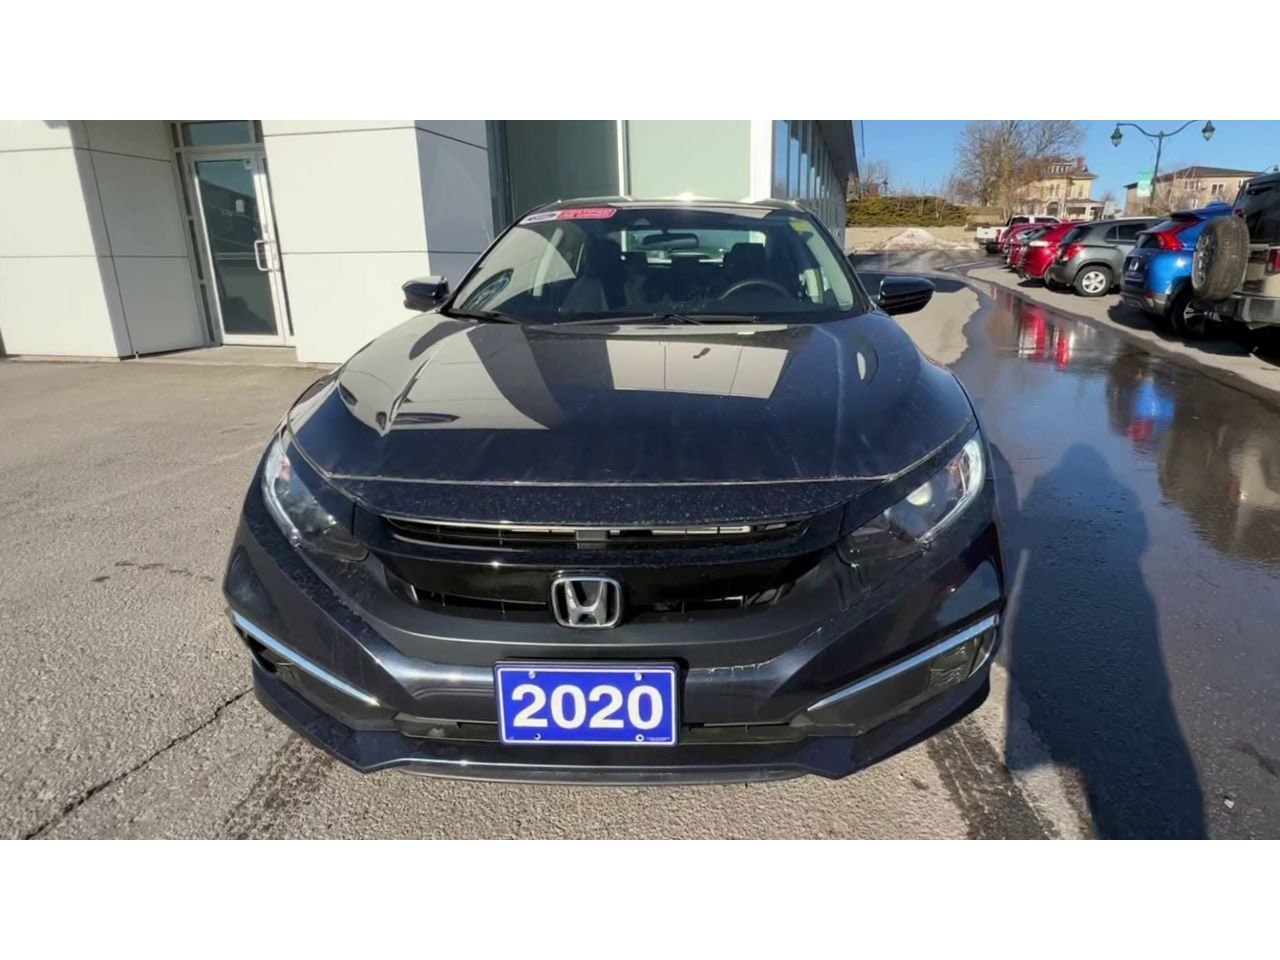 2020 Honda Civic Sedan - P20867 Full Image 3